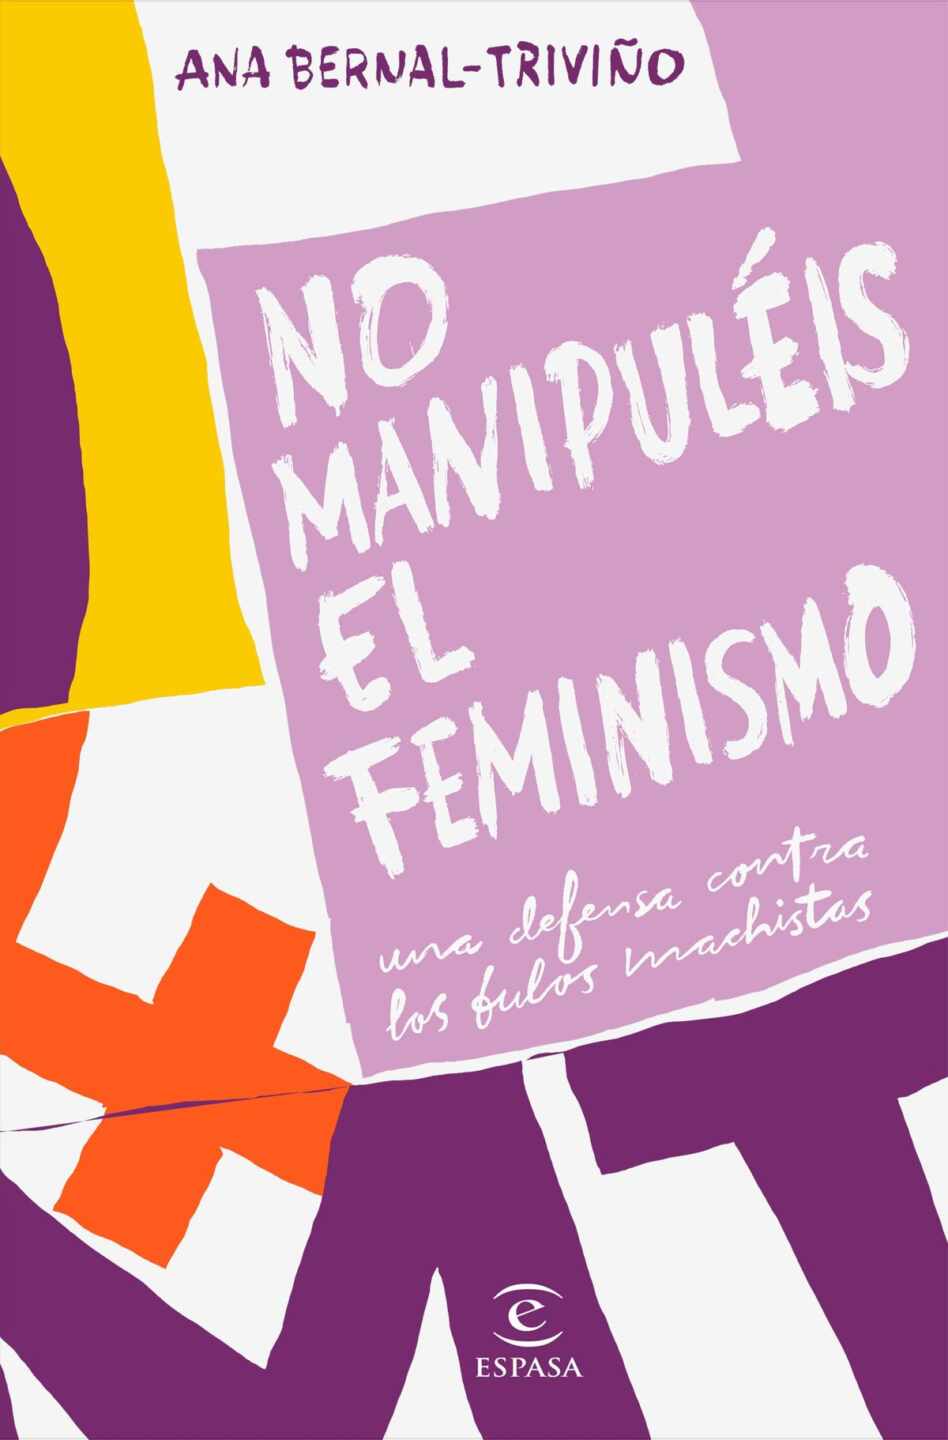 Portada del libro "No manipuléis el feminismo" de Ana Bernal-Triviño